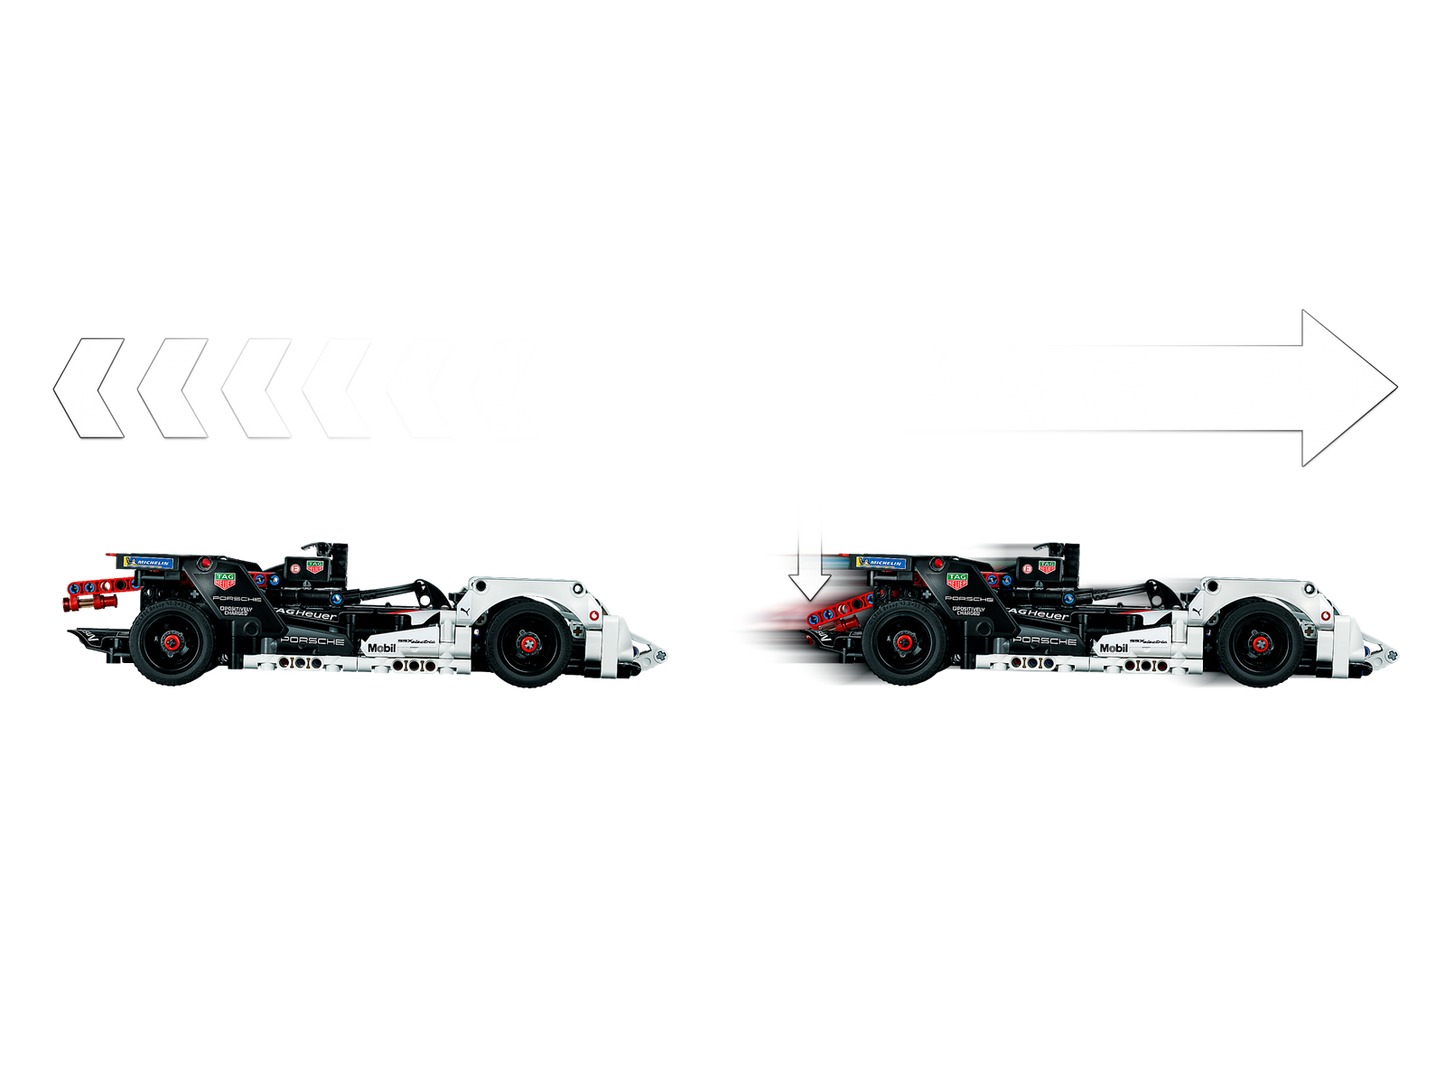 LEGO Technic Formula E Porsche 99X Electric 42137